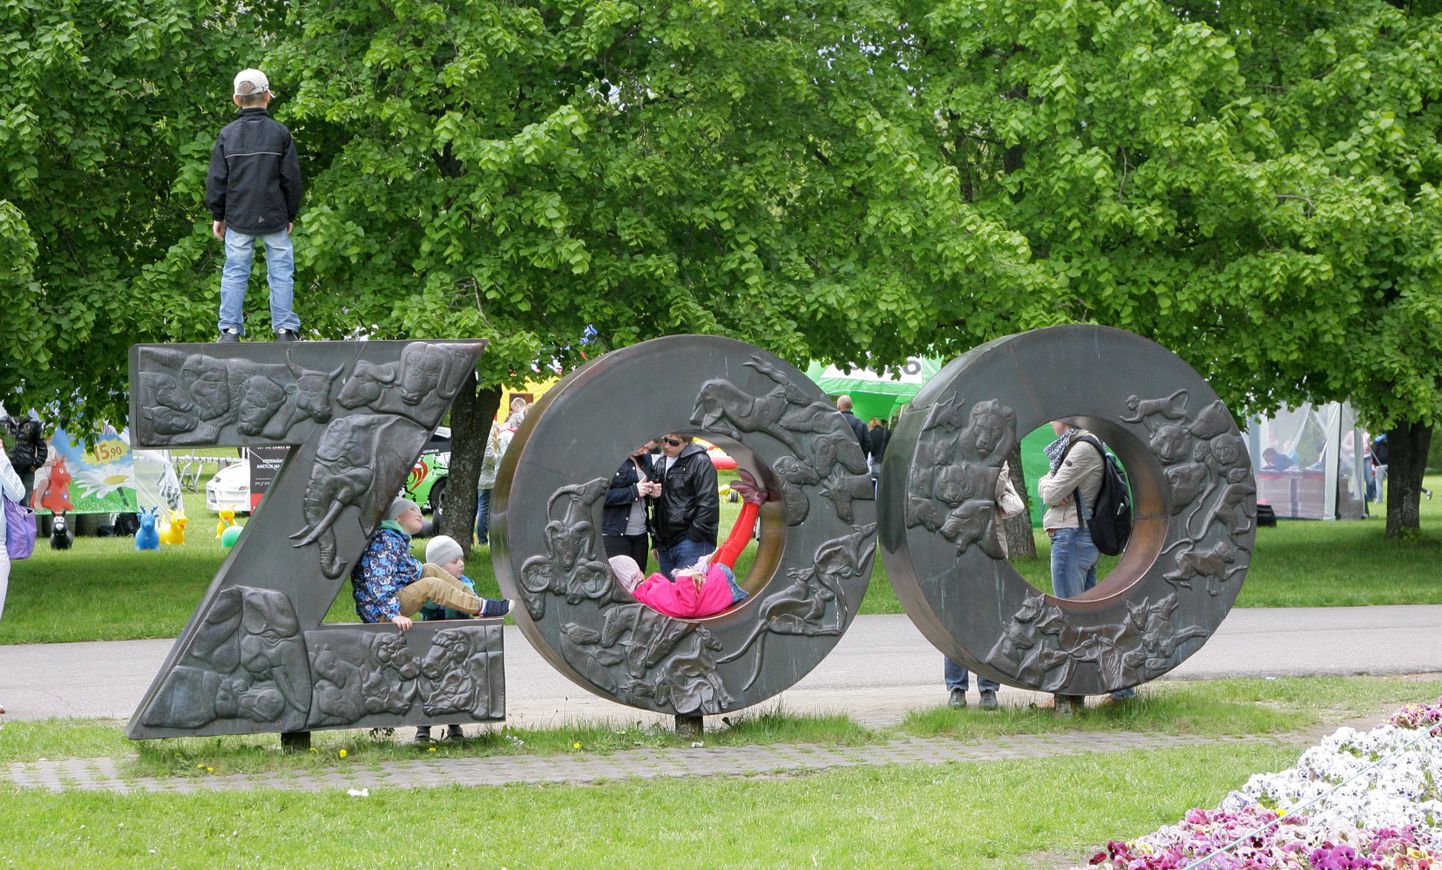 Lastekaitsepäeva üritus Tallinna loomaaias.